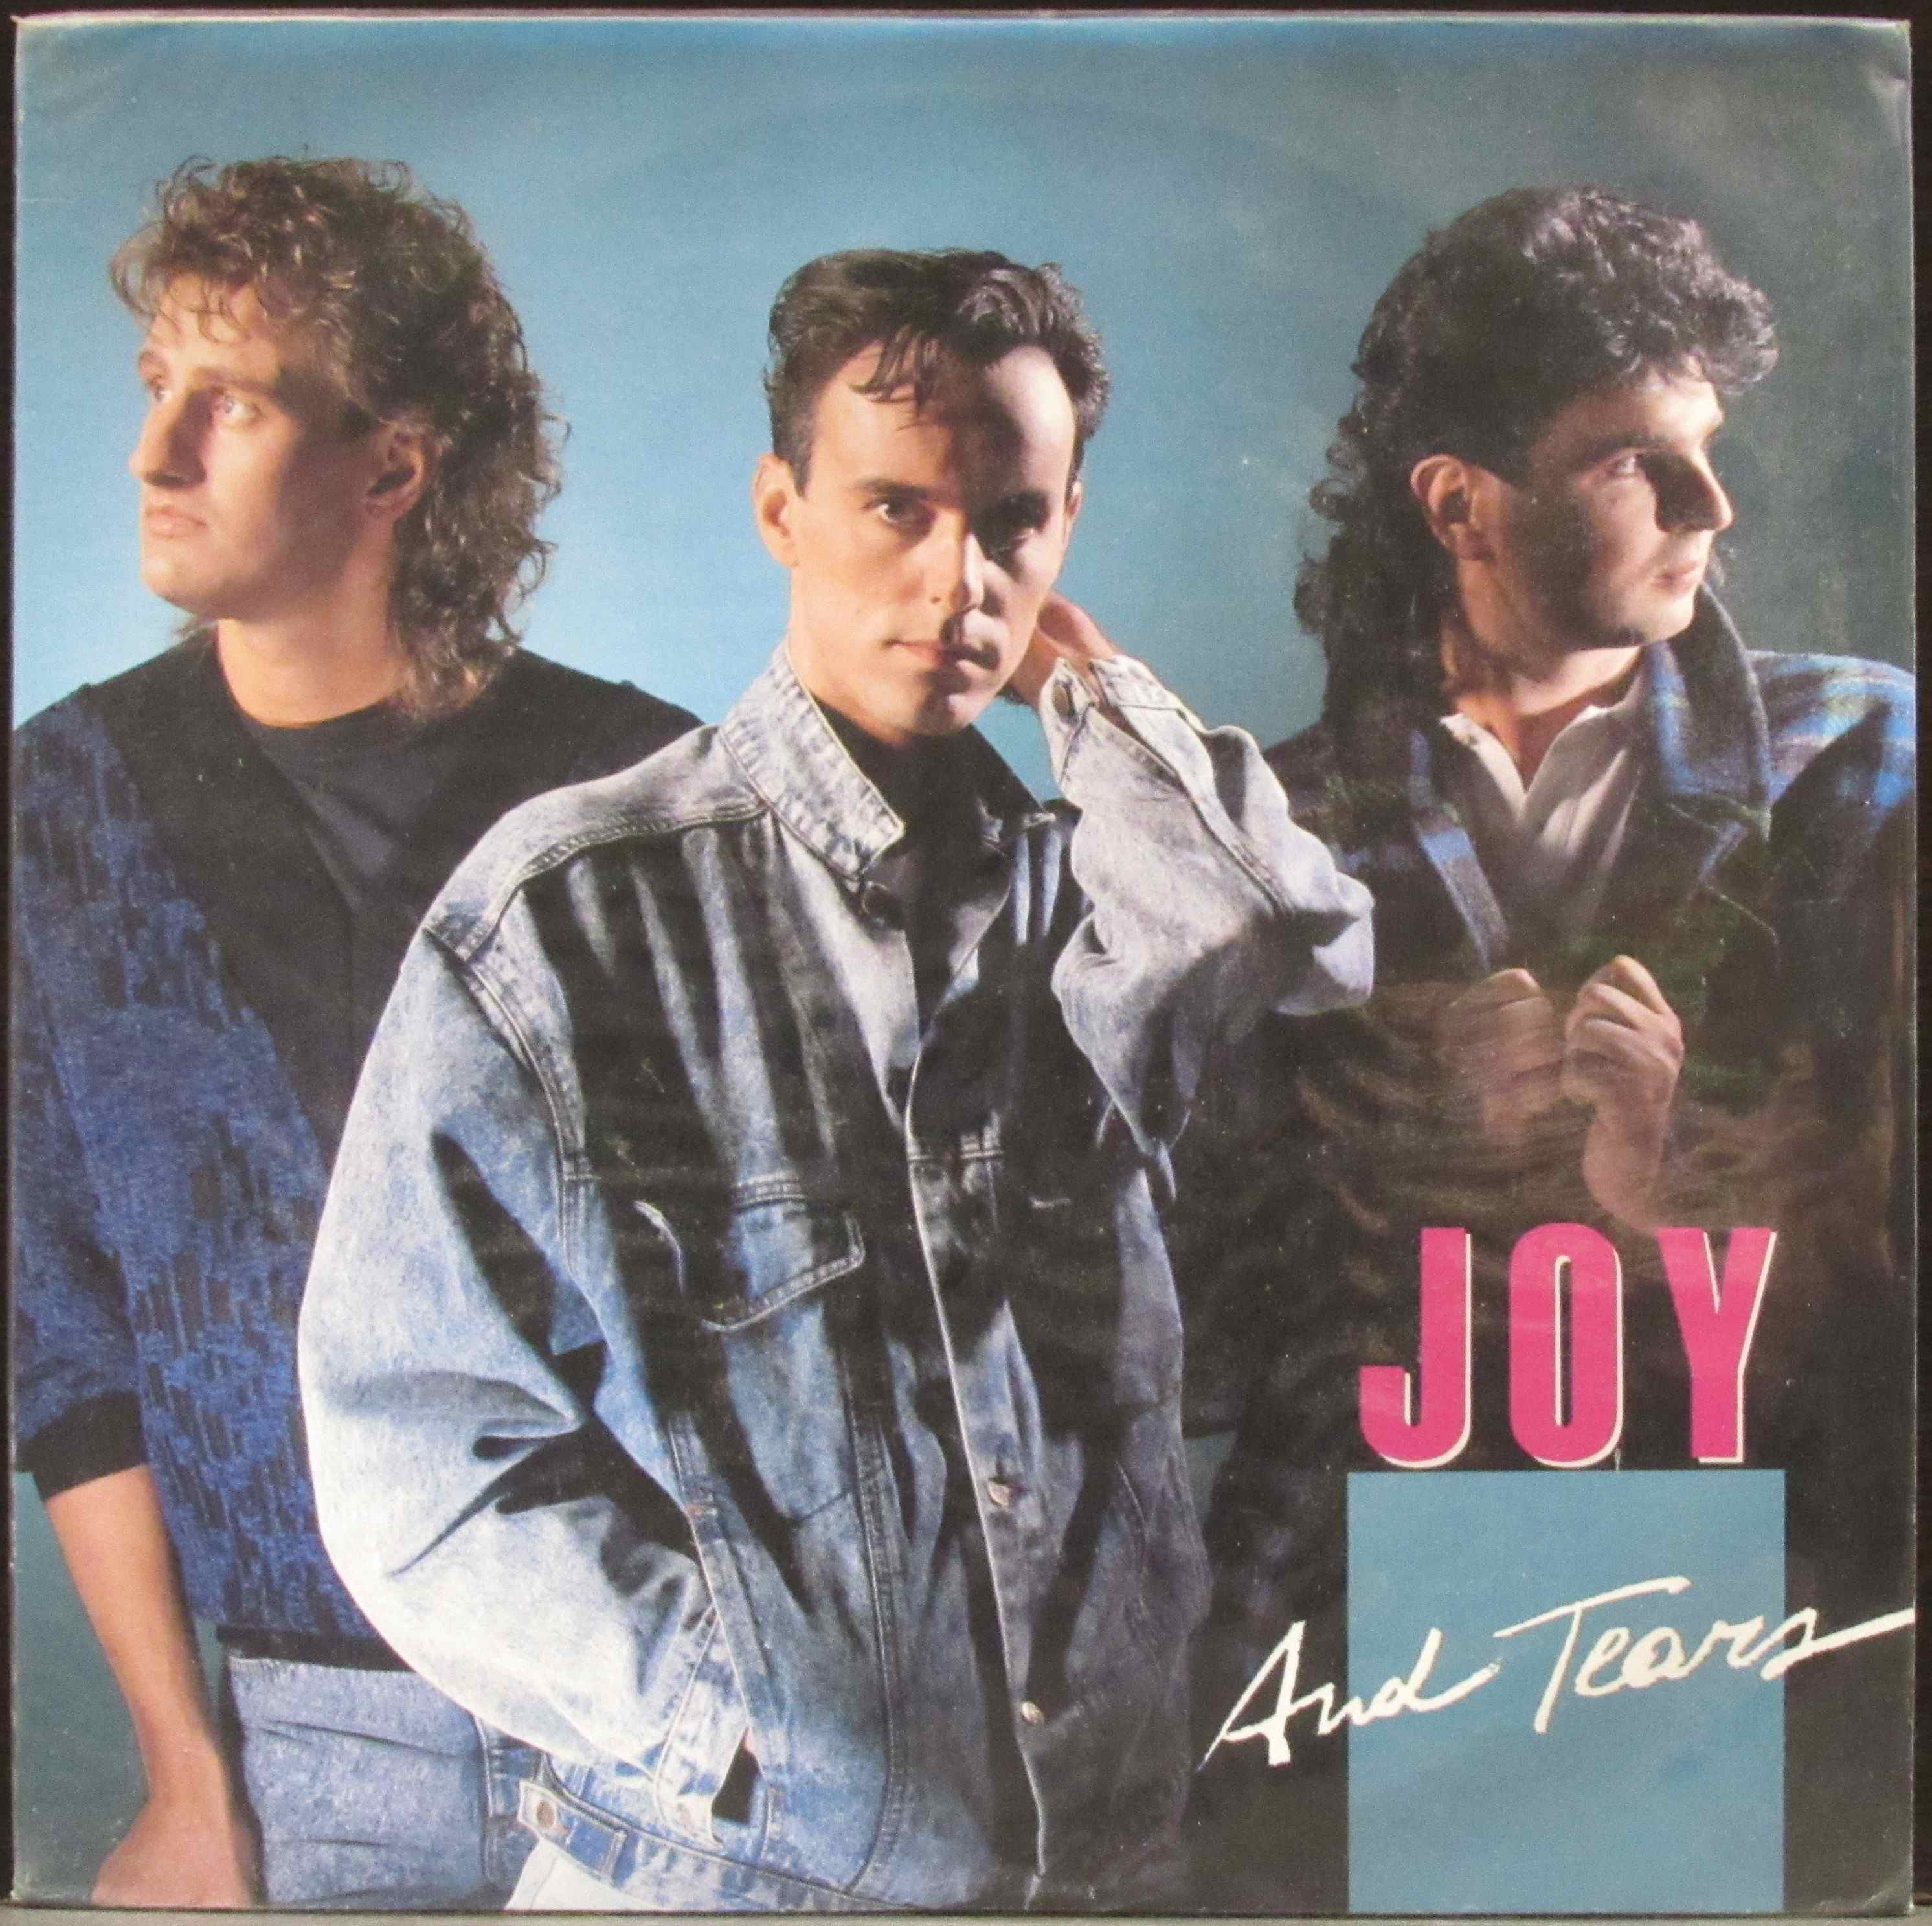 Фото группы джой. Joy группа 1986. Joy hello 1986 LP. Joy - Joy and tears (1986). Joy группа 1986 диск.